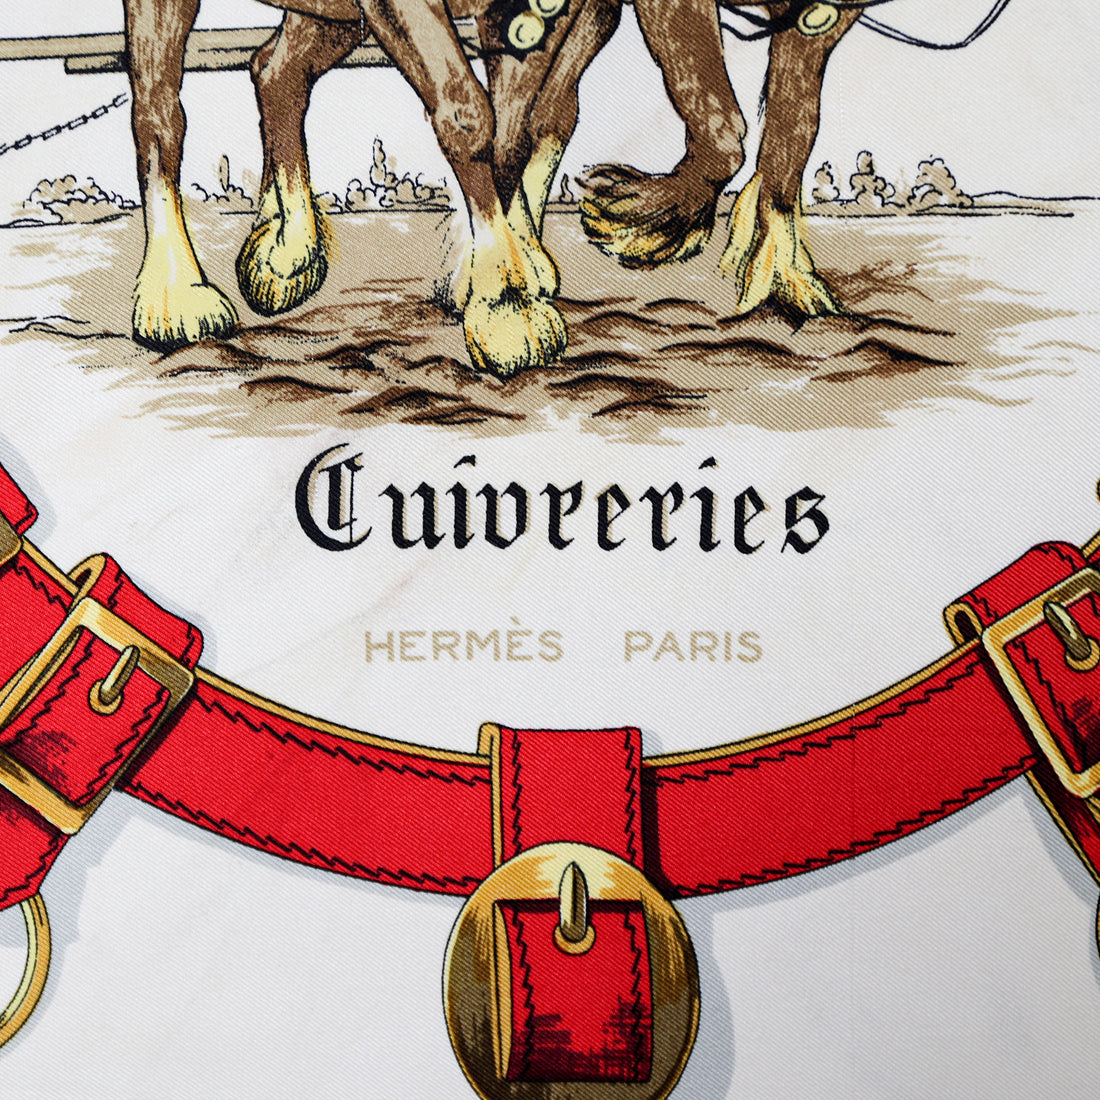 Hermès Seidentuch "Cuivreries" in Creme